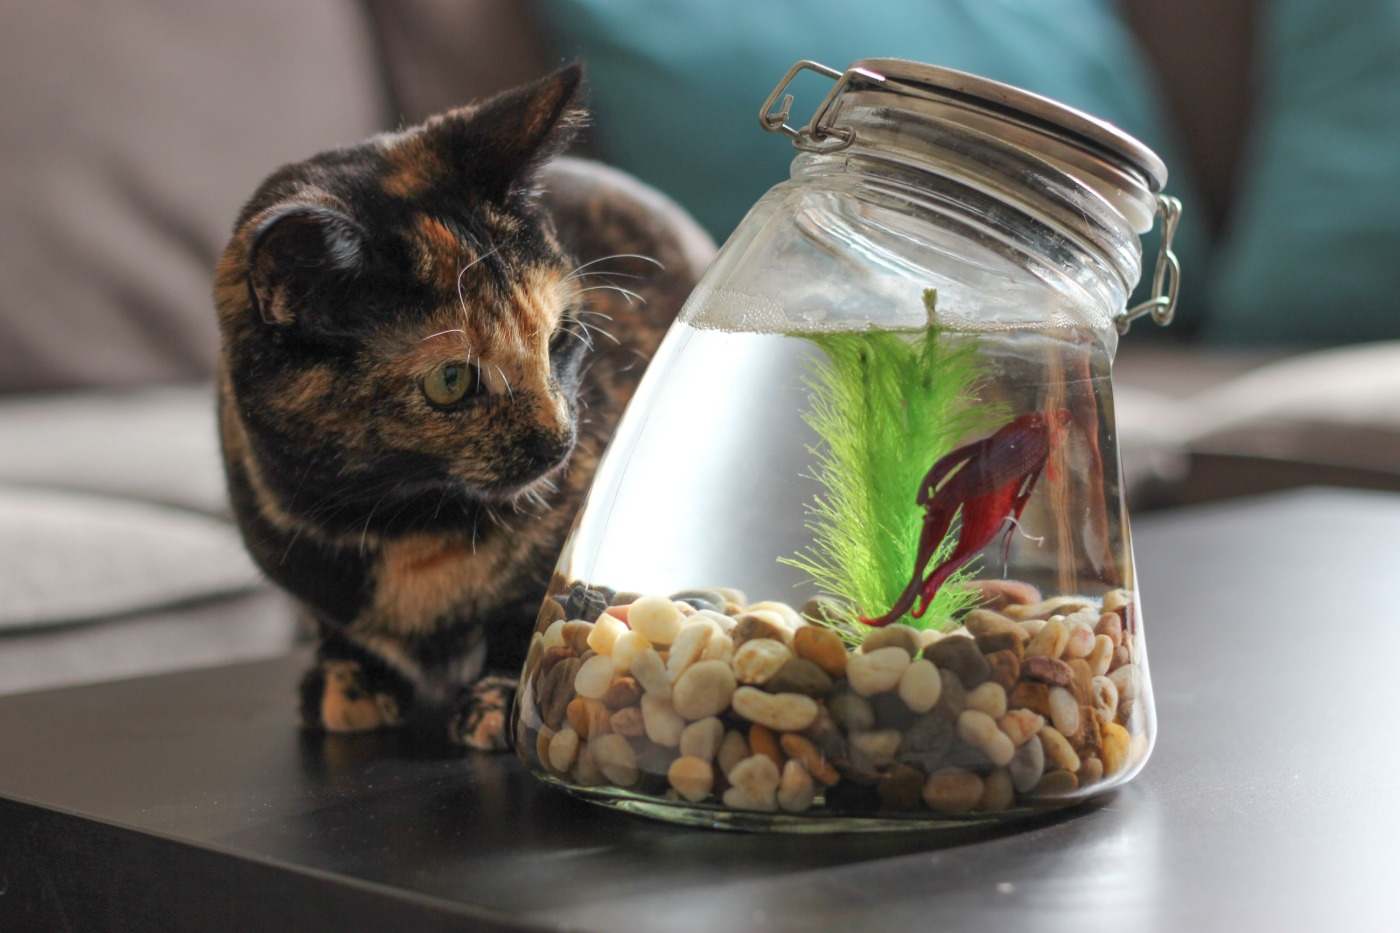 håll kattdjur borta från betta fisk i sötvattenakvarium